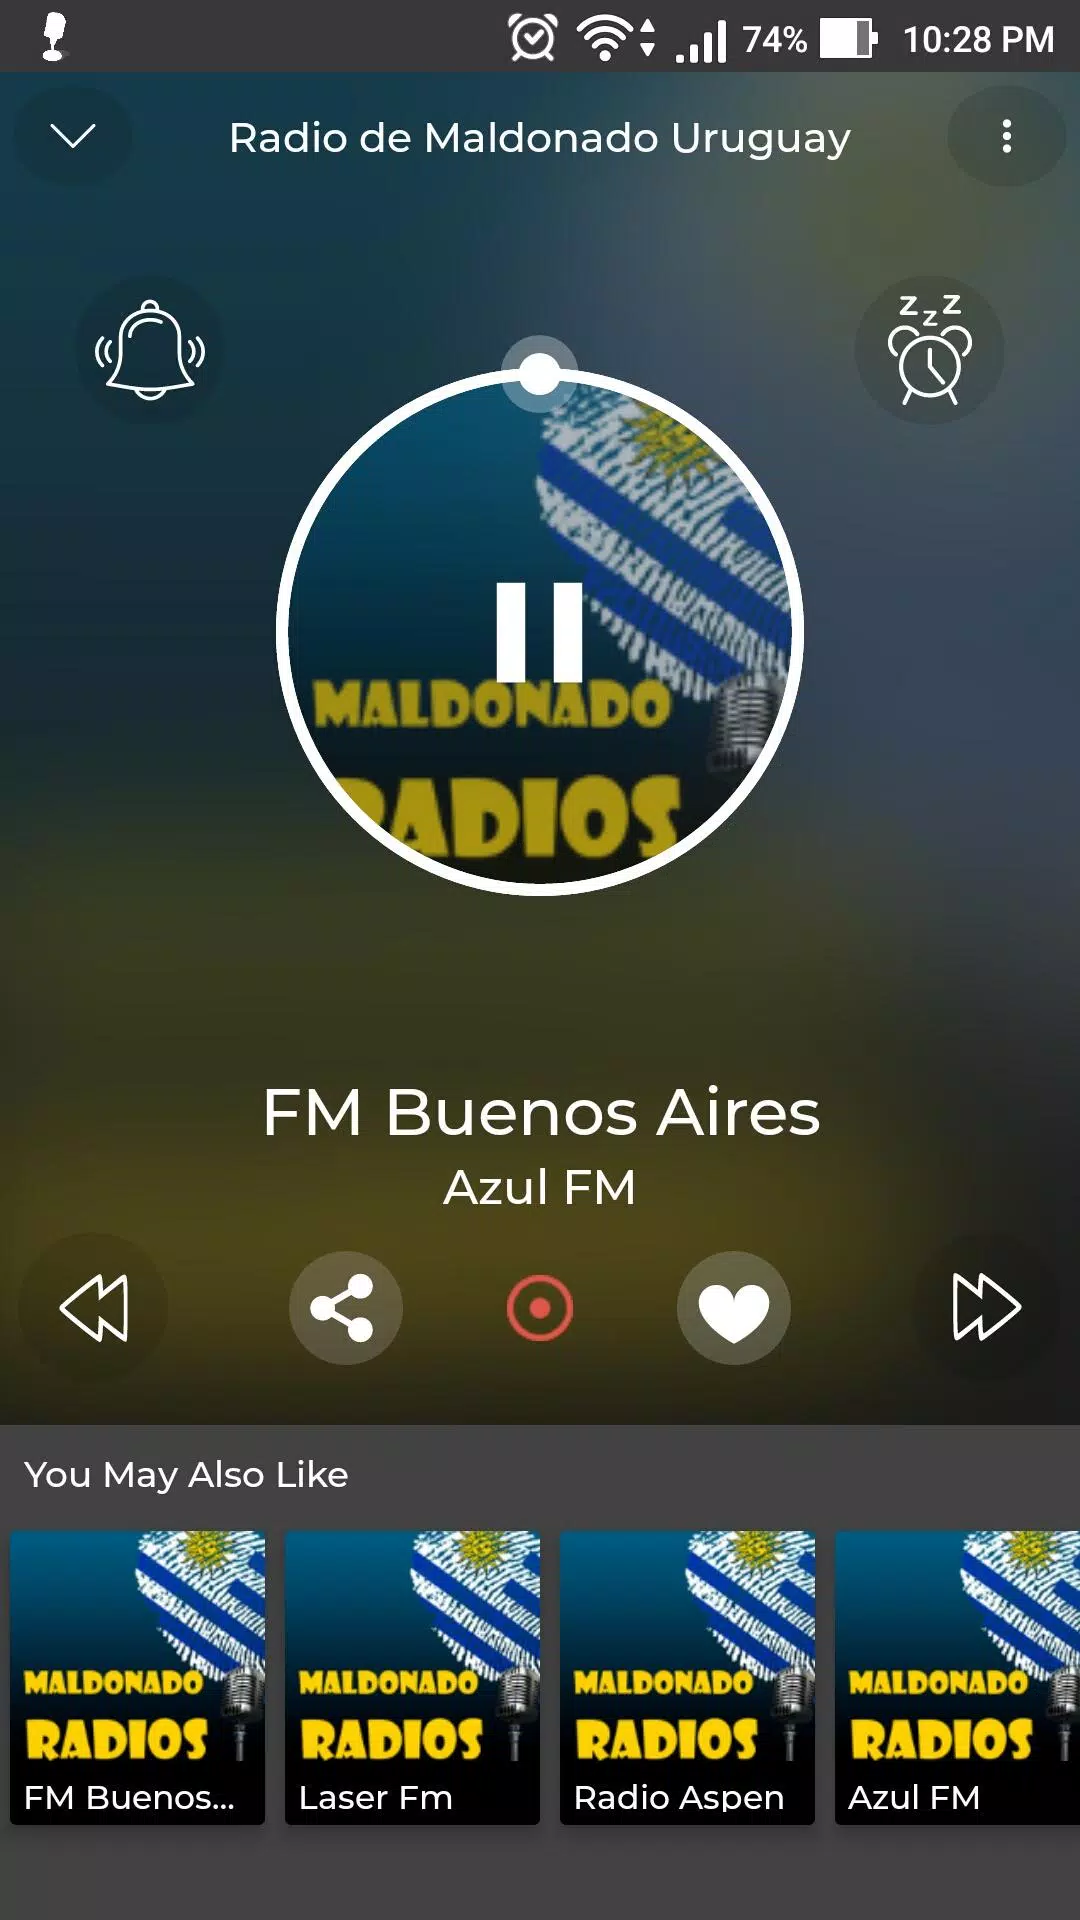 Radio de Maldonado Uruguay for Android - APK Download